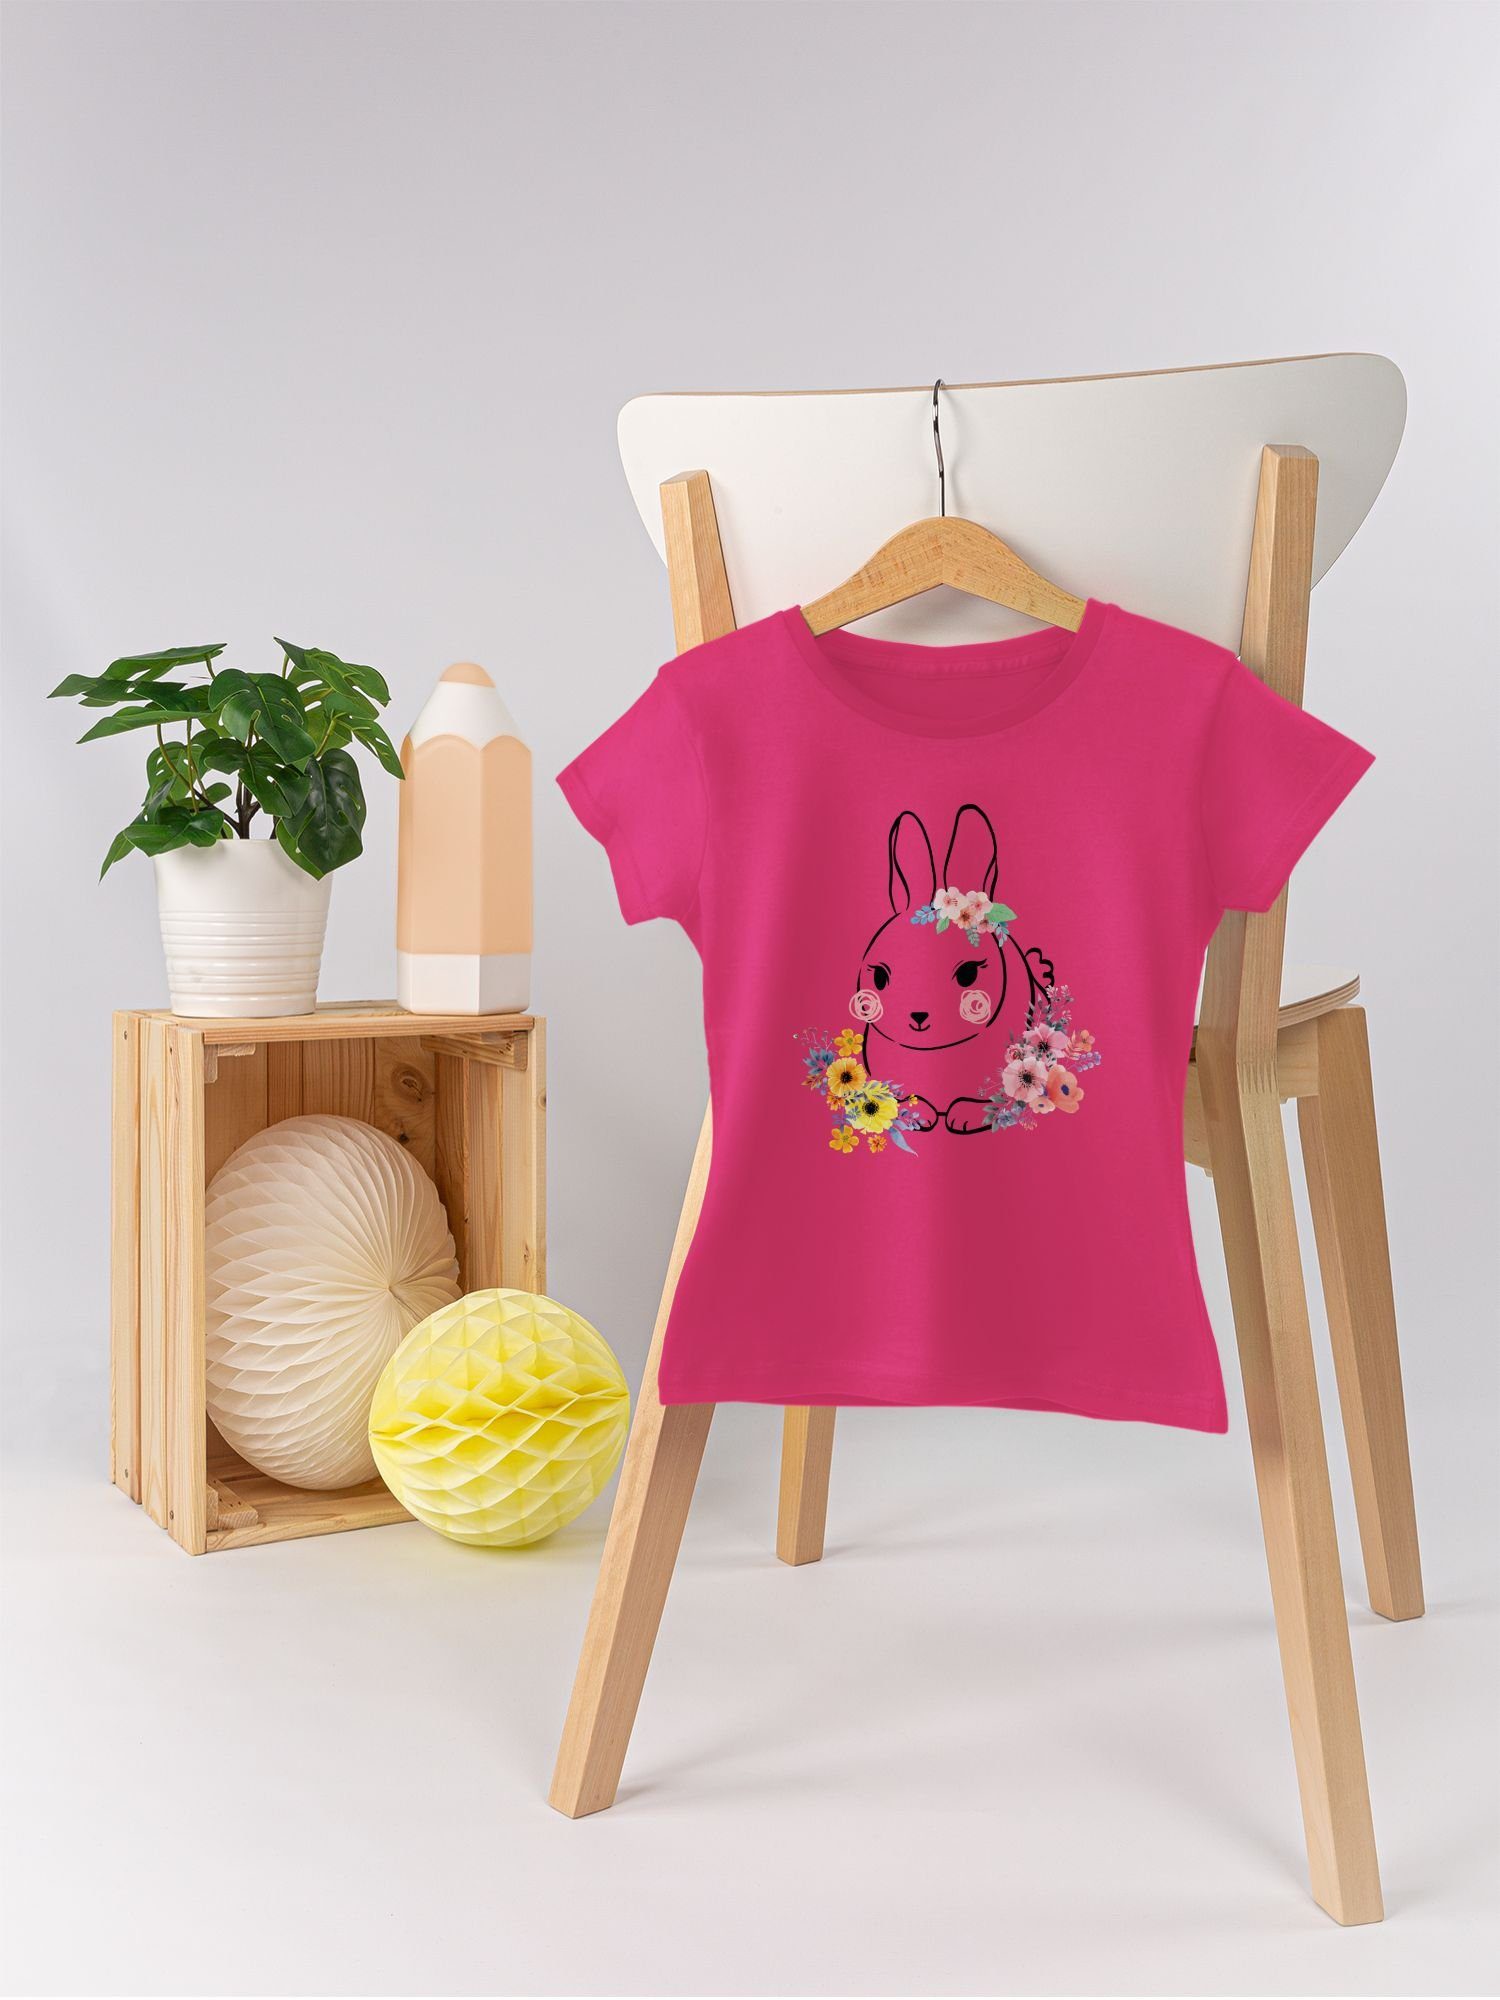 1 Hase Blumen T-Shirt - Shirtracer Ostern Geschenk Fuchsia